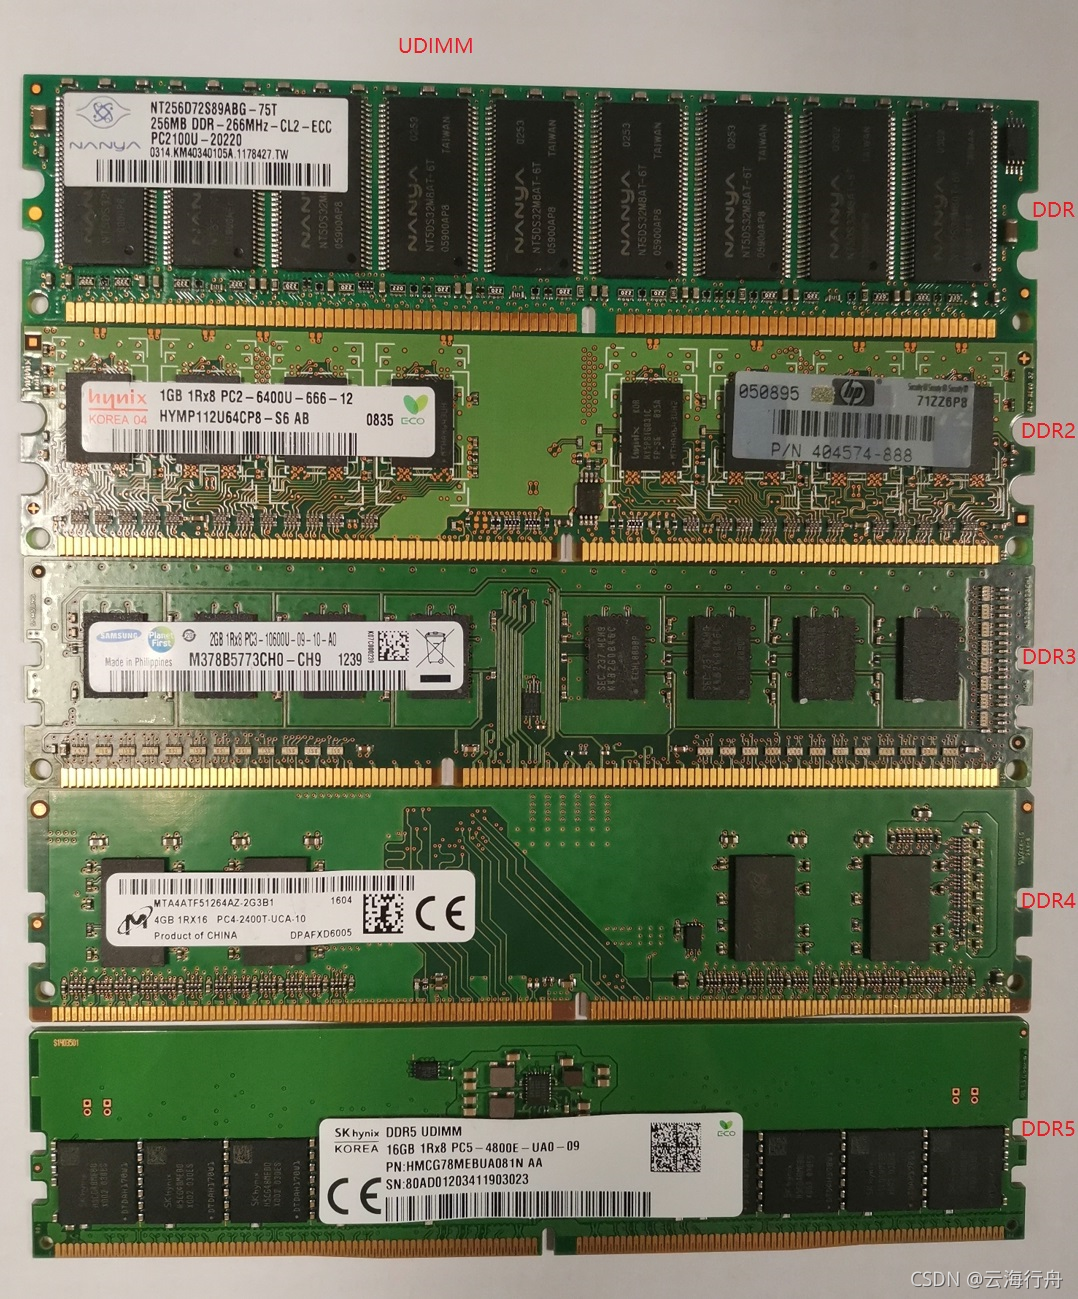 DDR3L 内存是什么？如何排查电脑是否搭载？